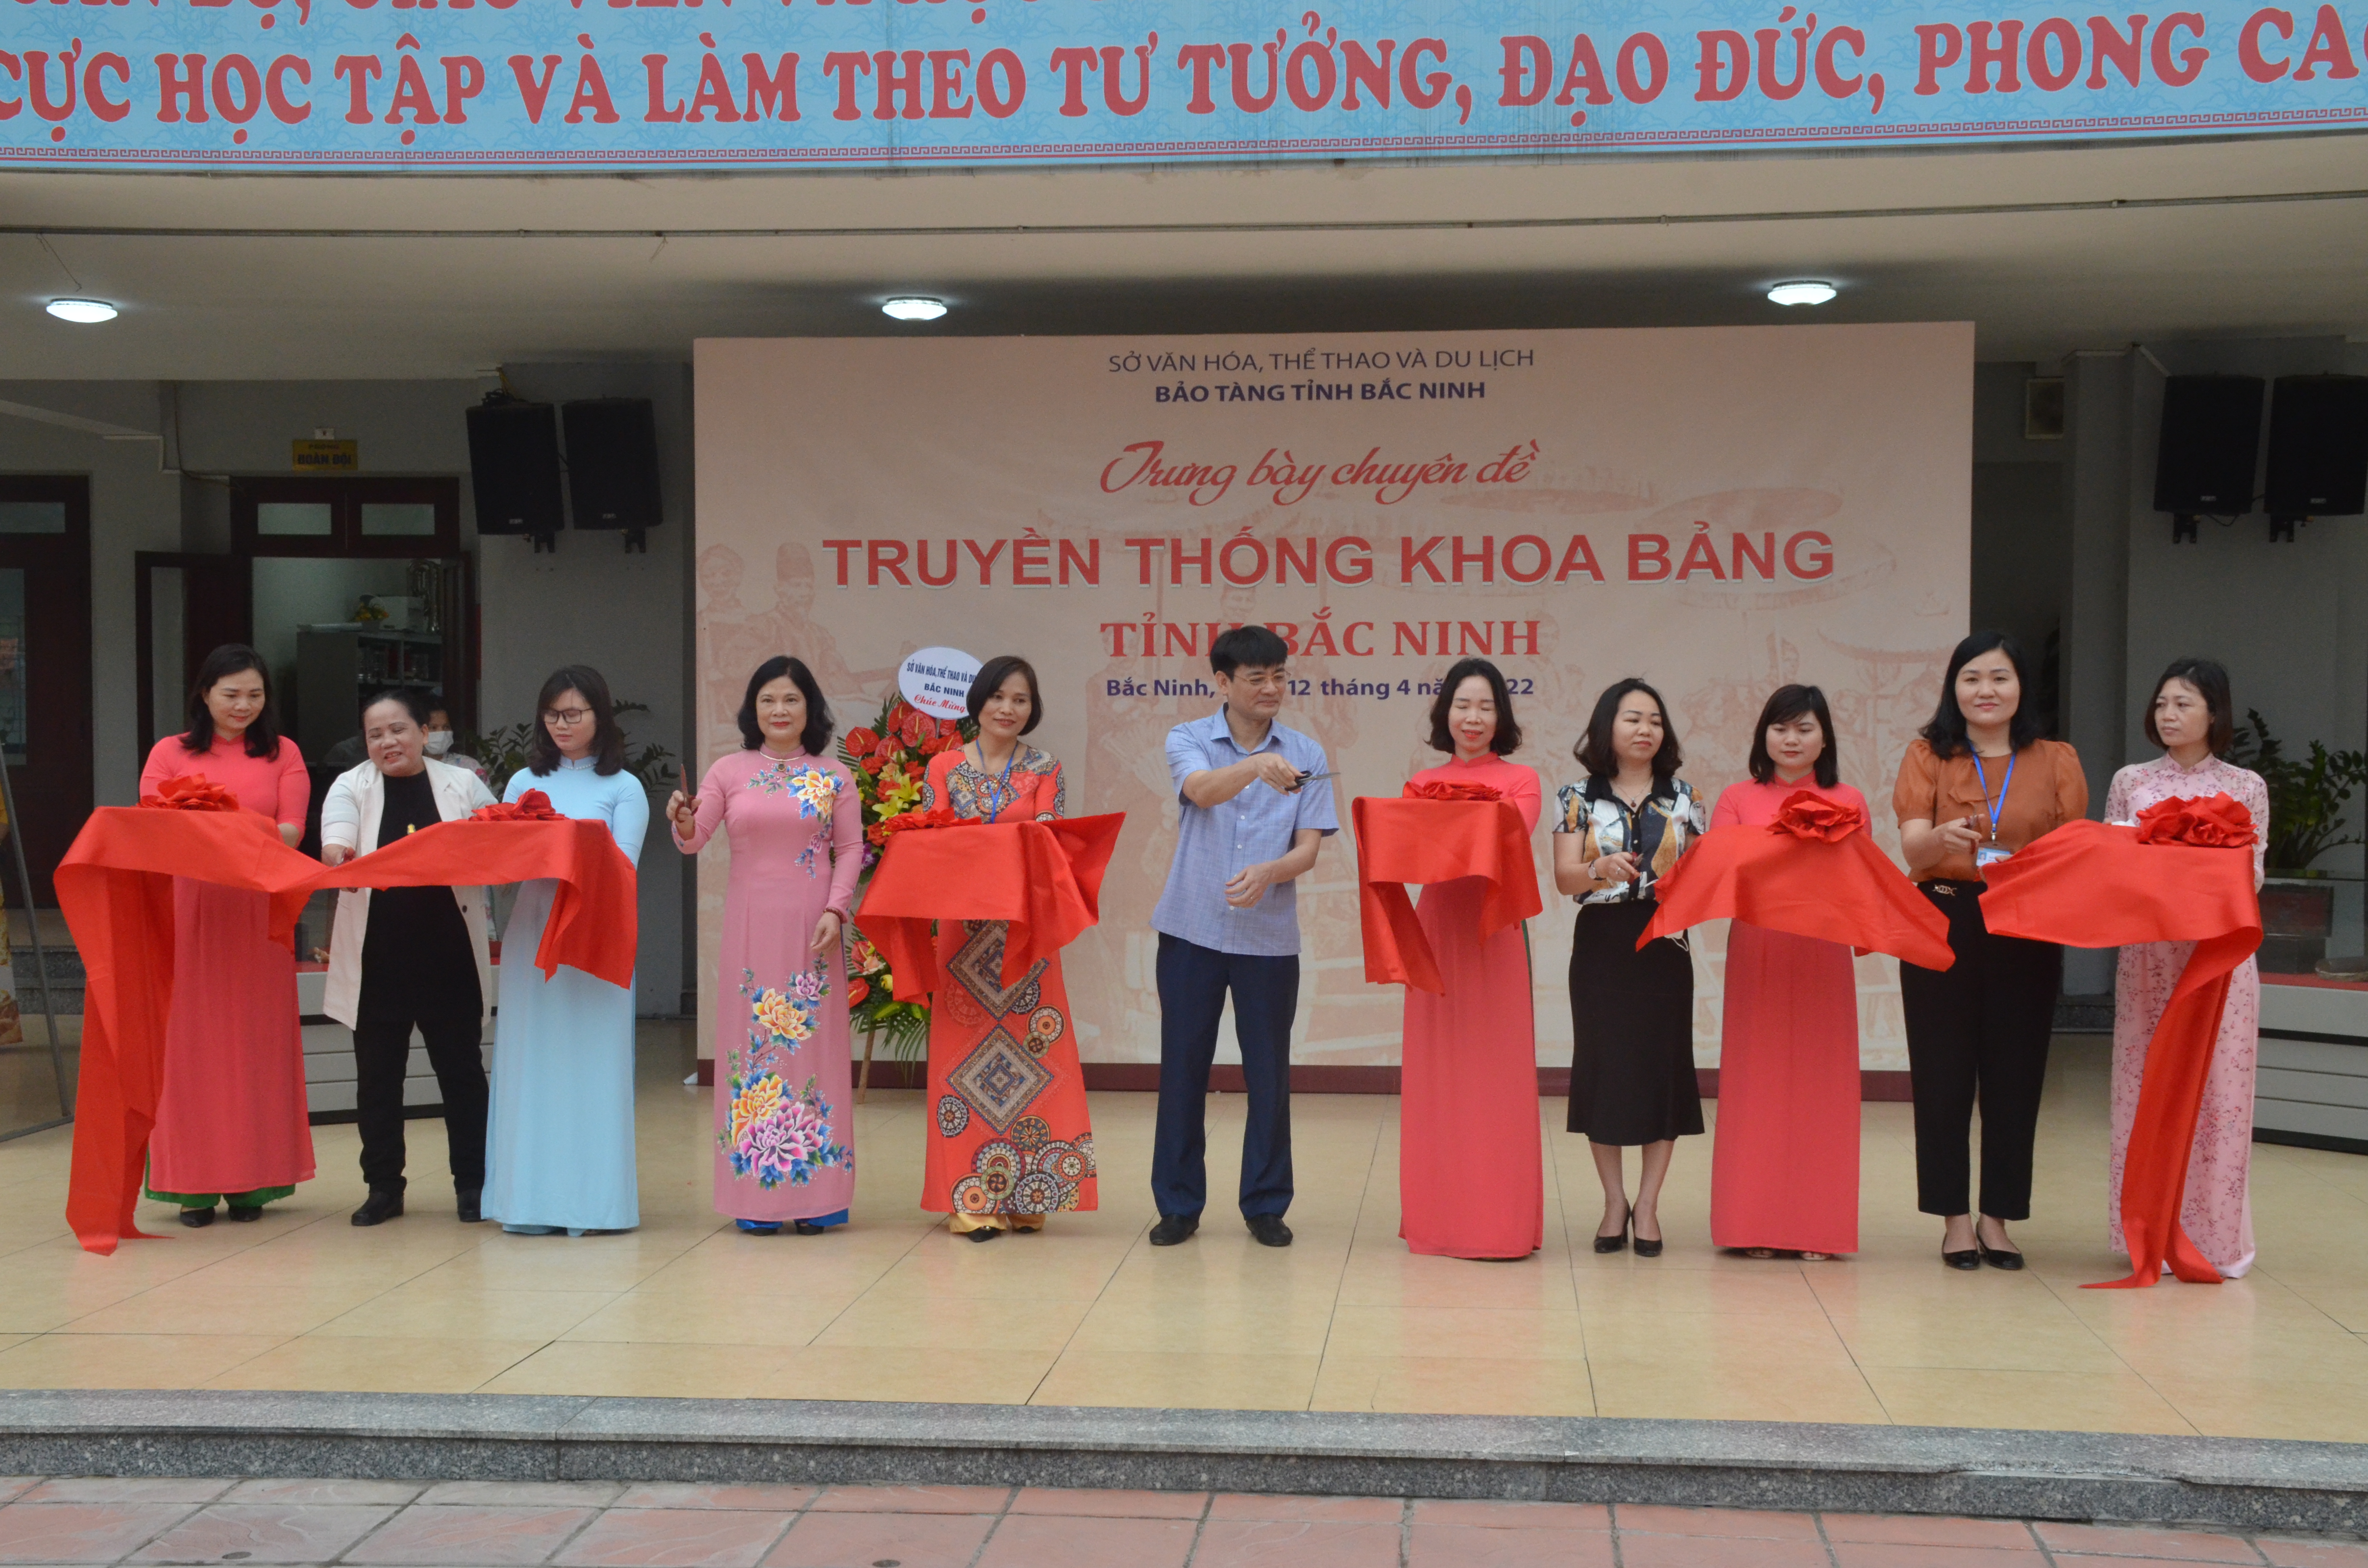 Các đại biểu cắt băng khai mạc Trưng bày lưu động chuyên đề  “Truyền thống khoa bảng tỉnh Bắc Ninh”